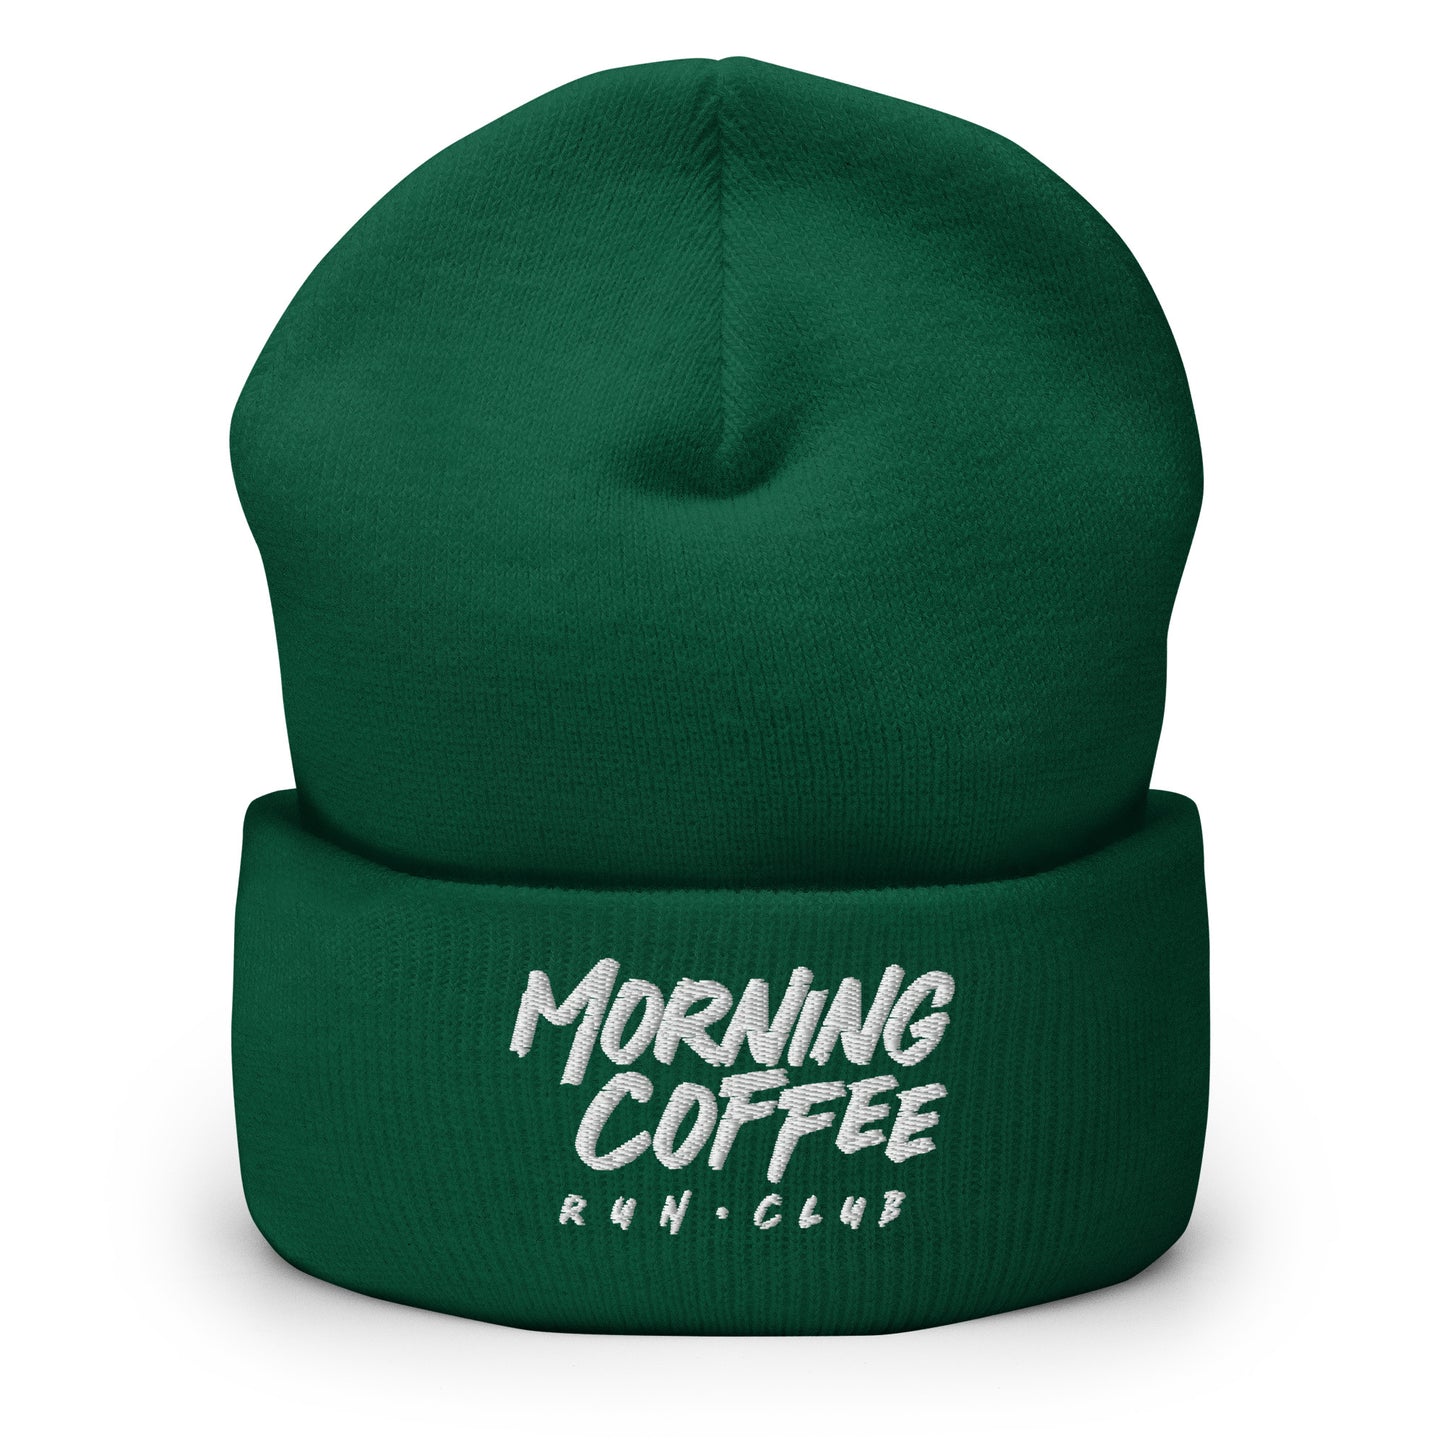 Morning Coffee Run Club Wordmark Cuffed Beanie